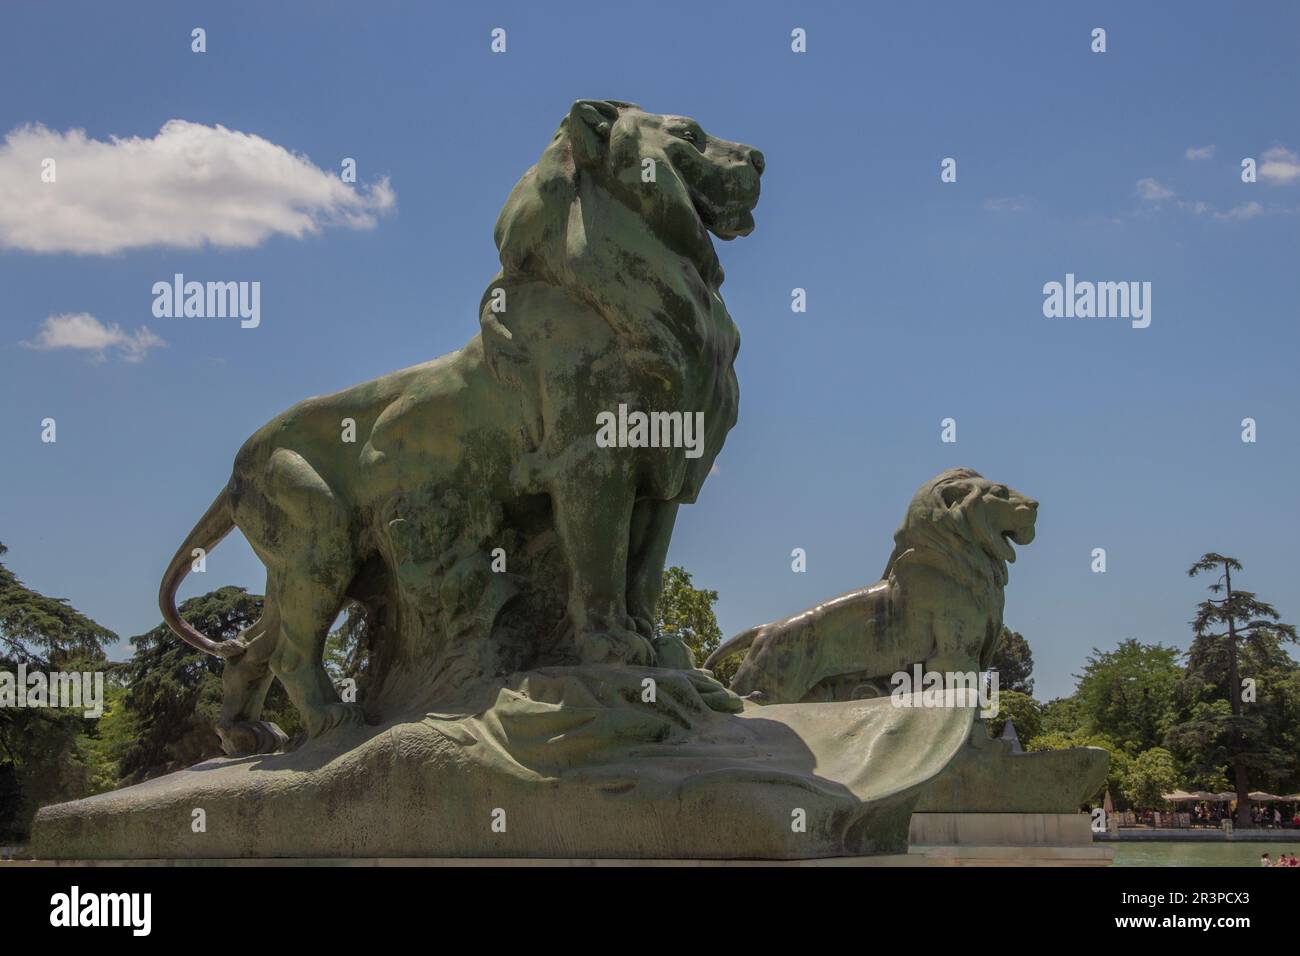 Lions in the Retiro park in Madrid, Spain Monumento a Alfonso XII, Leones en el parque El Retiro de Madrid, España. Stock Photo